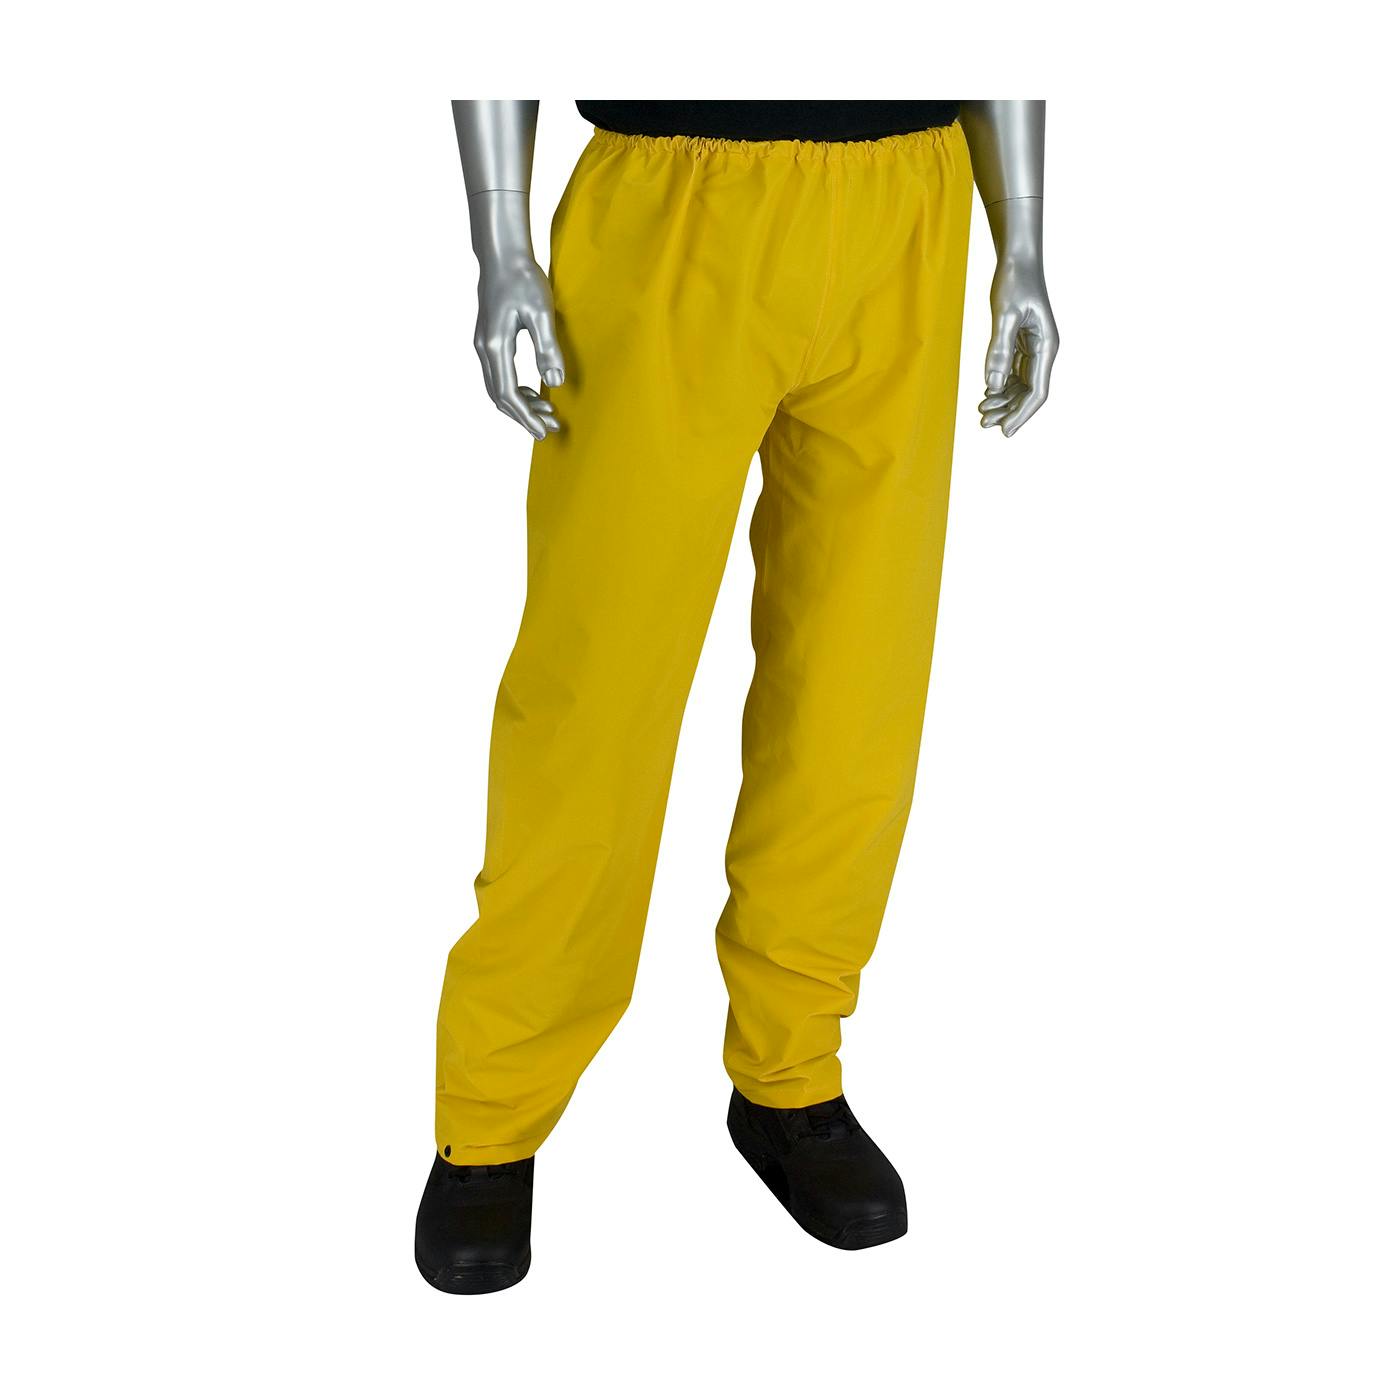 Premium Elastic Rain Pants - 0.35mm, Yellow (201-350P)